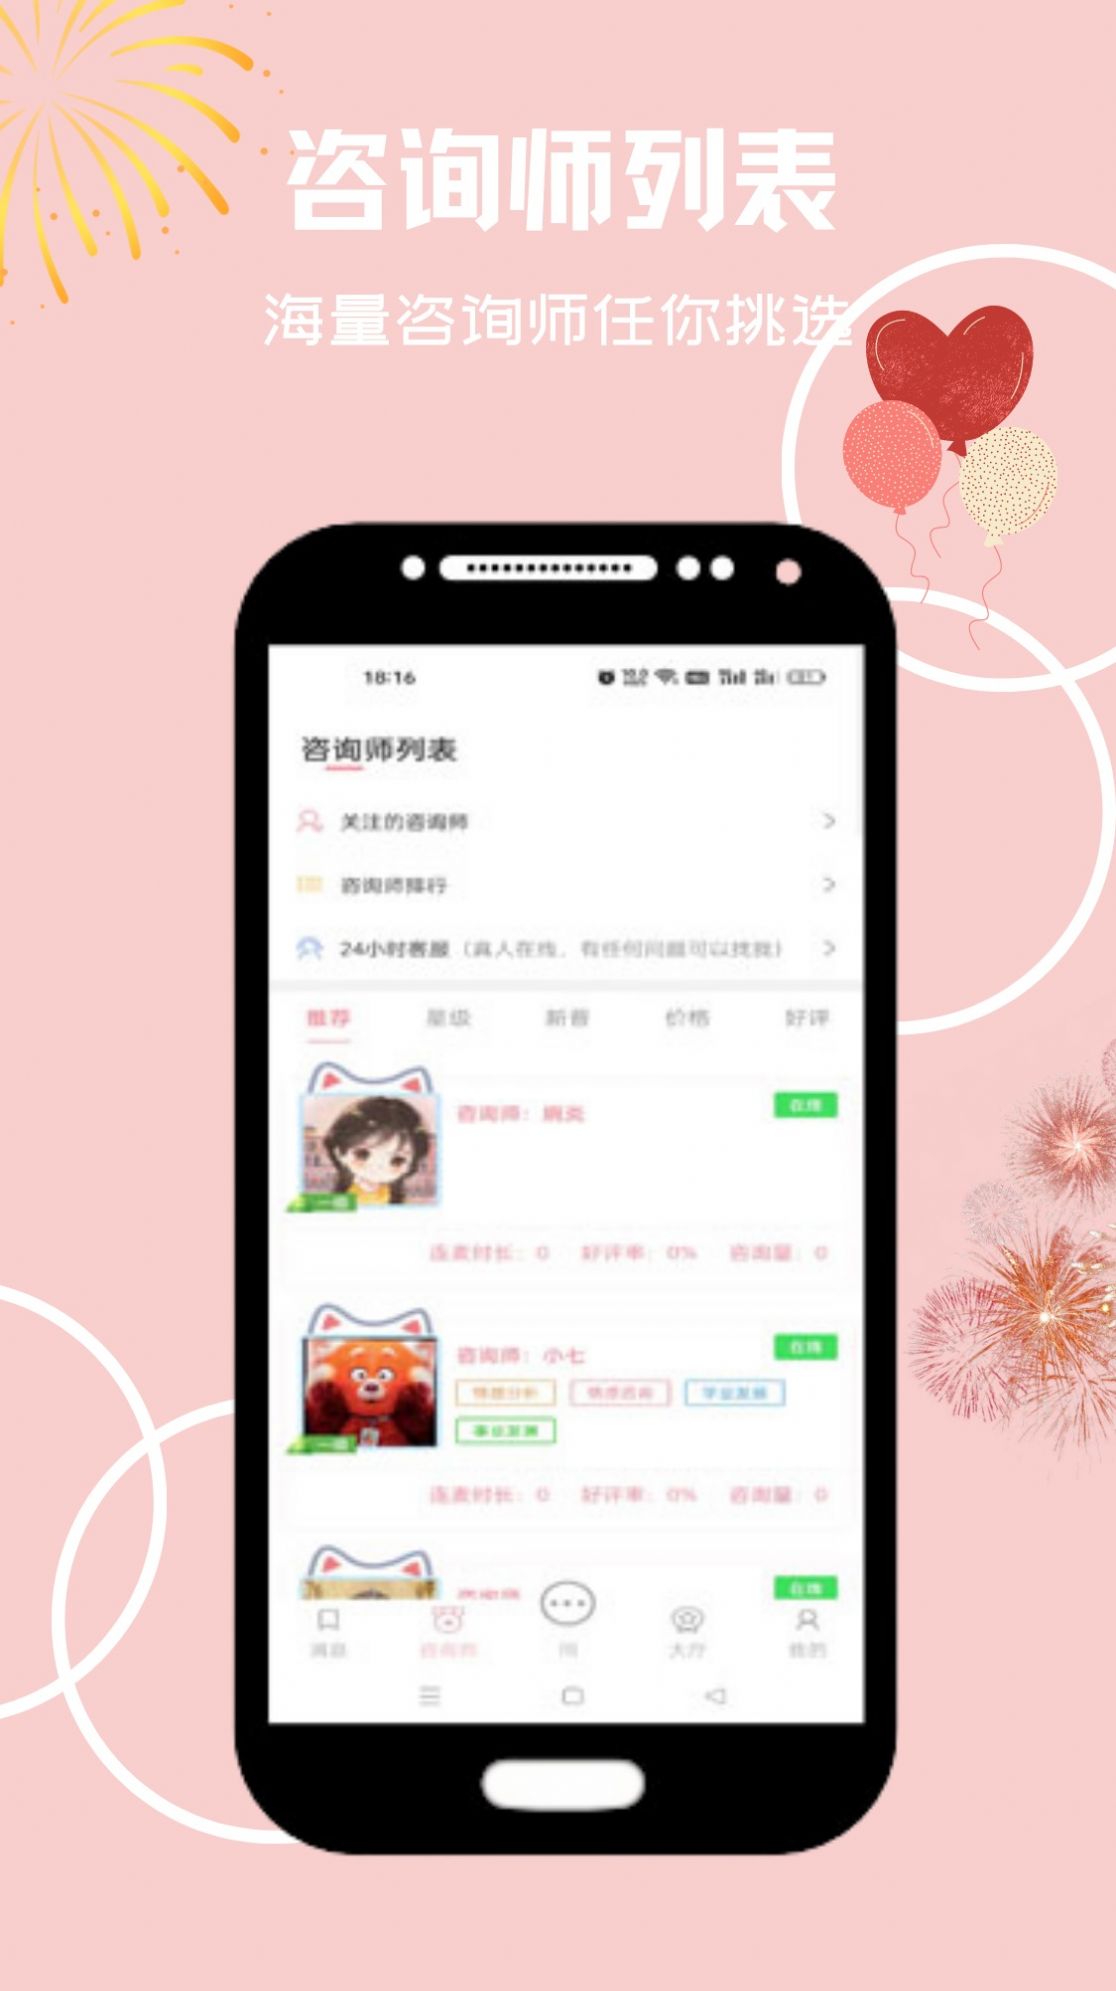 心享事成倾诉app.jpg